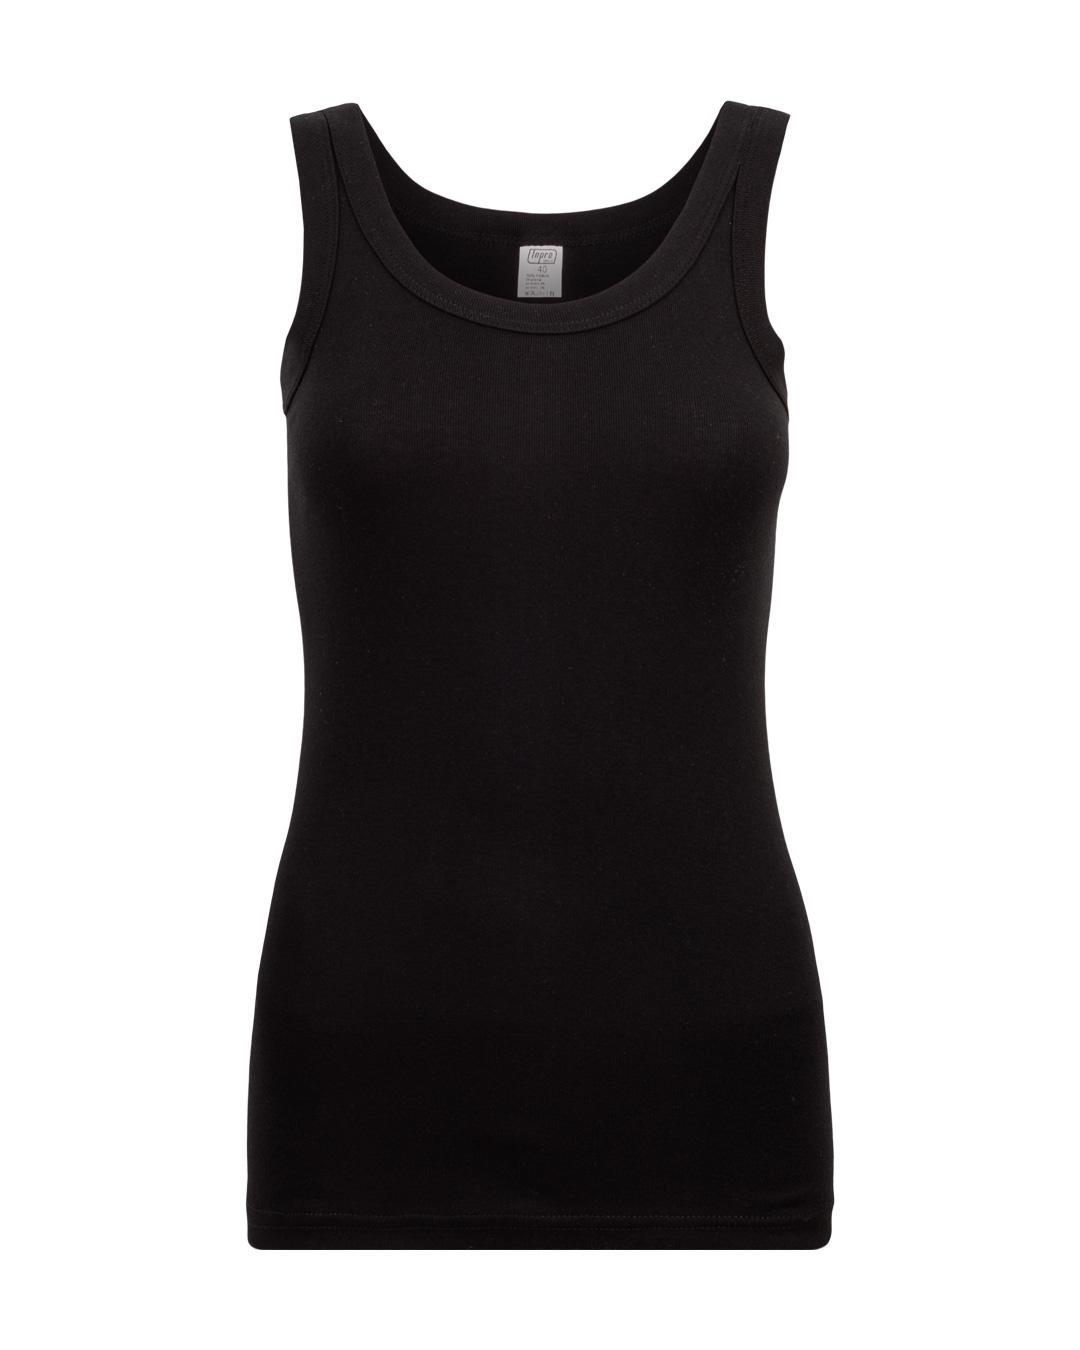 Selected image for INPRO Ženska pamučna majica sa širokim bretelama crna